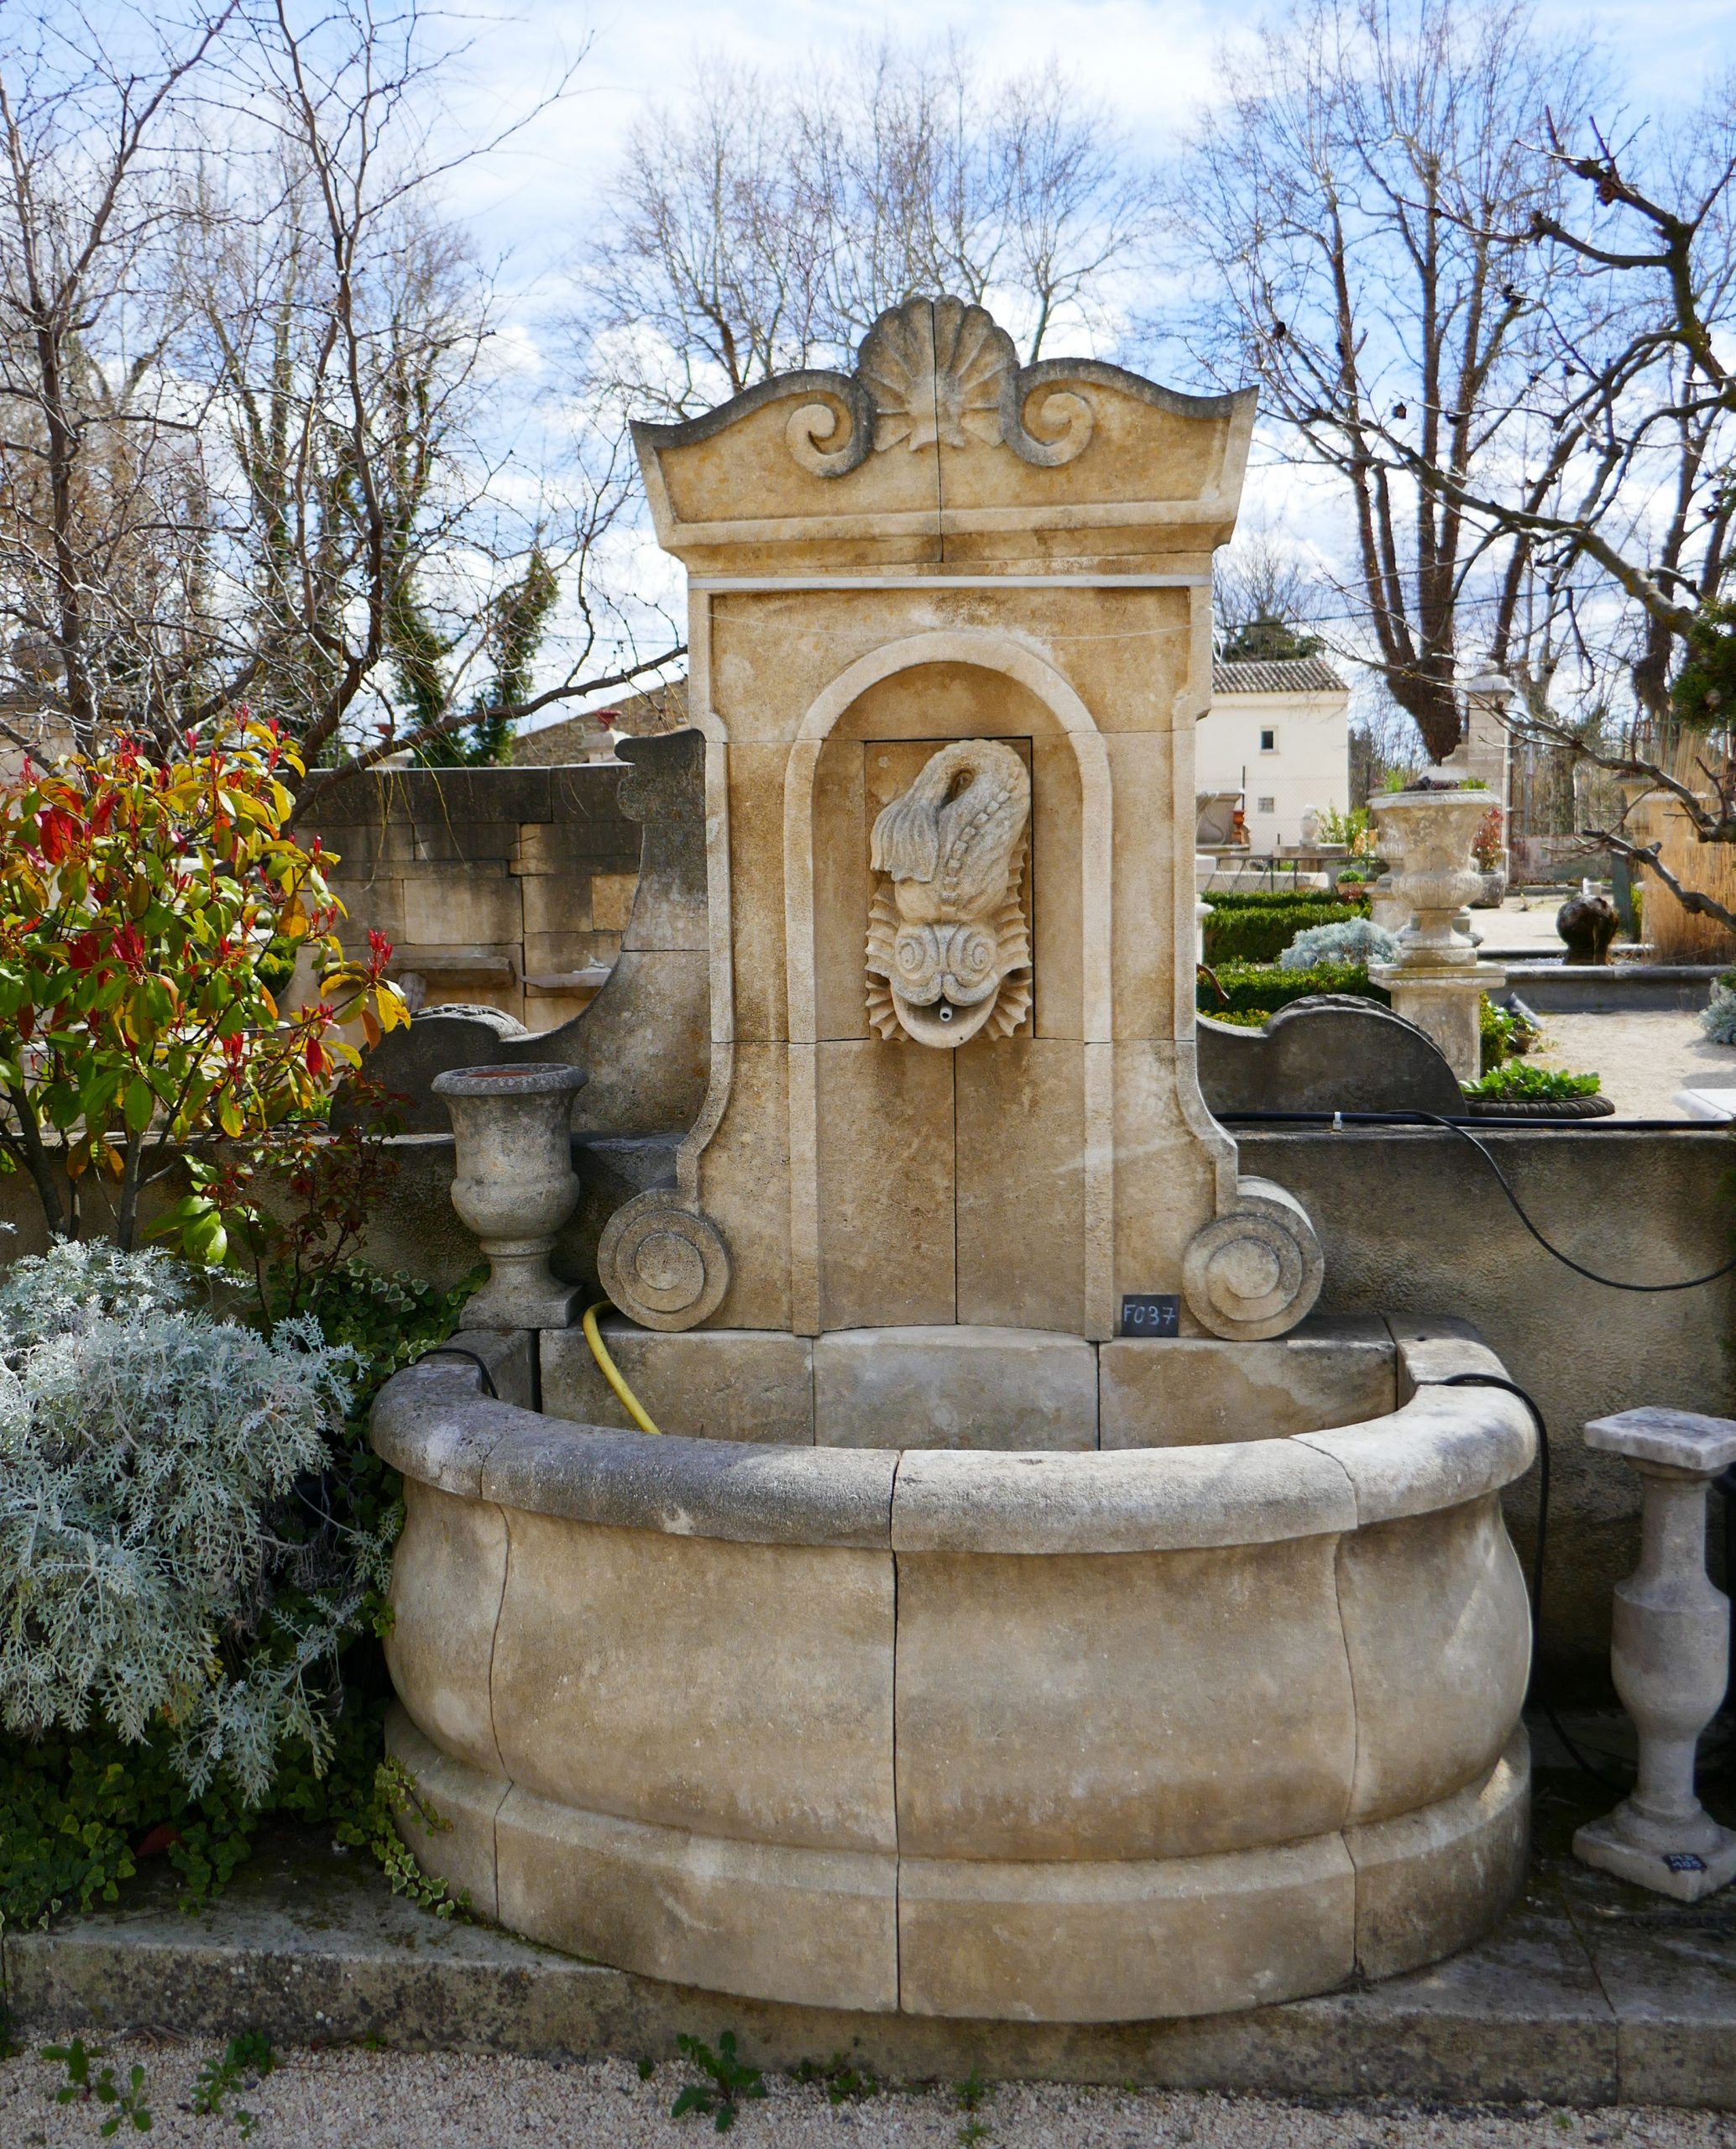 Une Fontaine De Jardin 100% Provençale ! En Effet, Cette ... encequiconcerne Grande Fontaine De Jardin